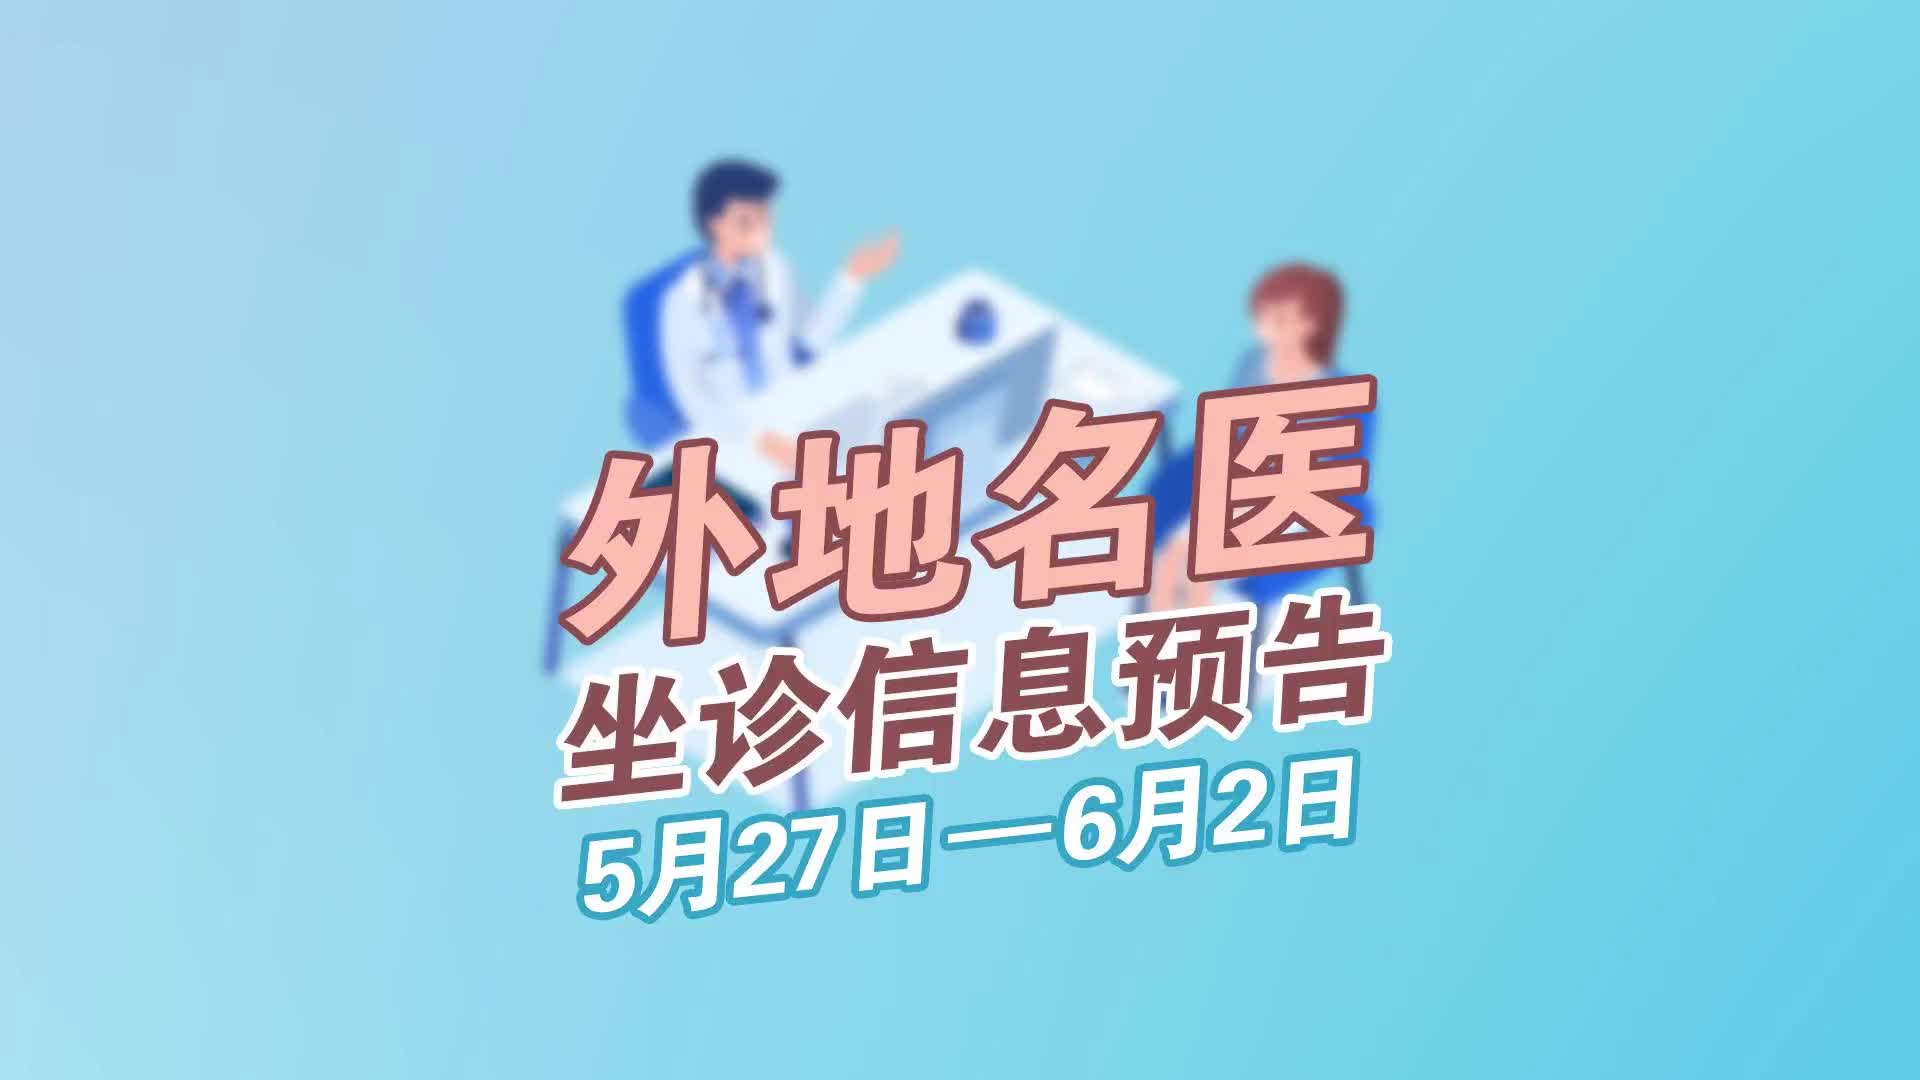 更济宁 | 外地名医坐诊信息预告 5月27日-6月2日